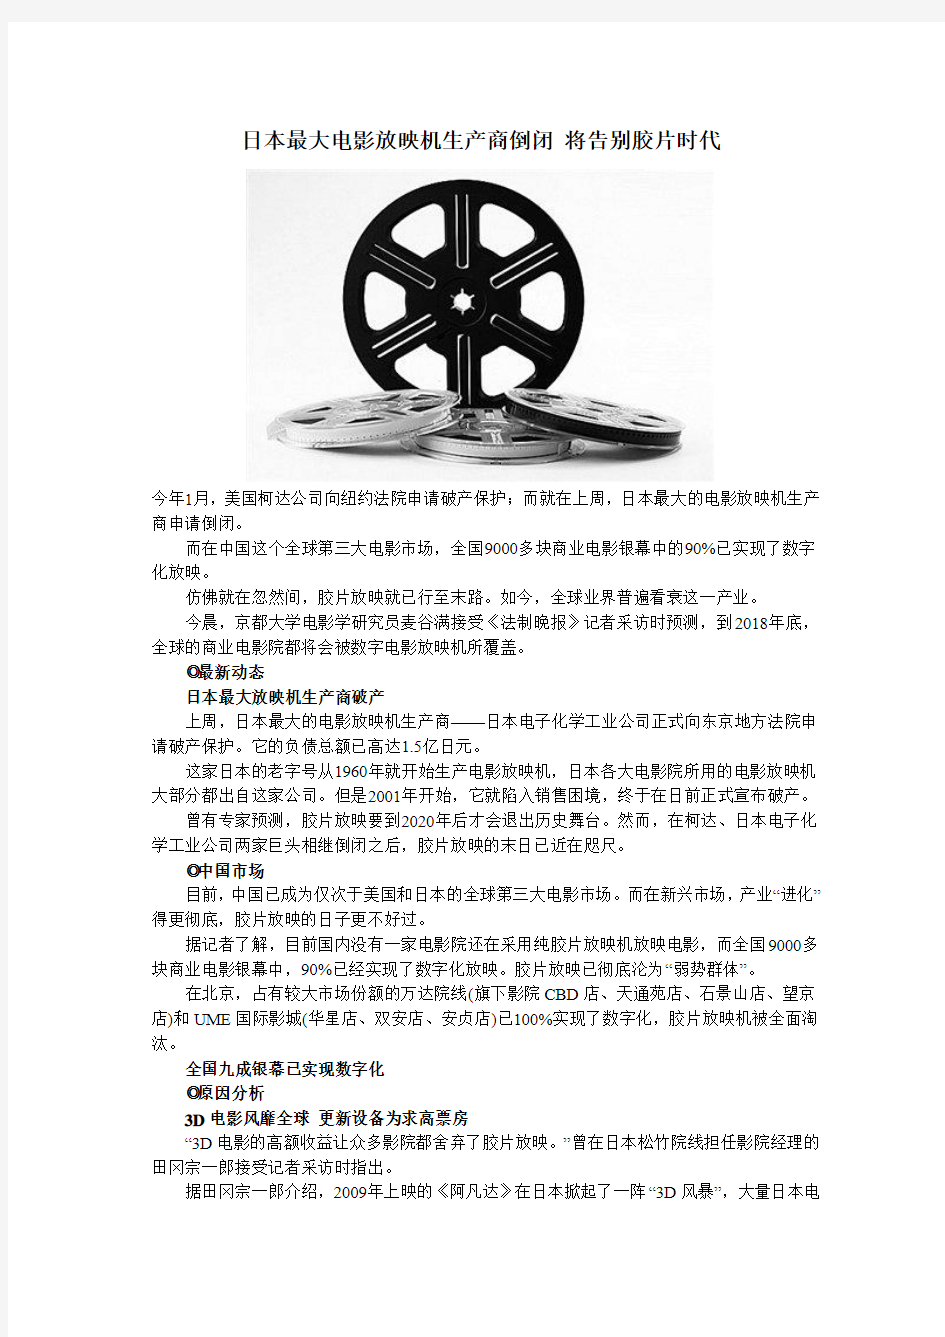 日本最大电影放映机生产商倒闭 将告别胶片时代